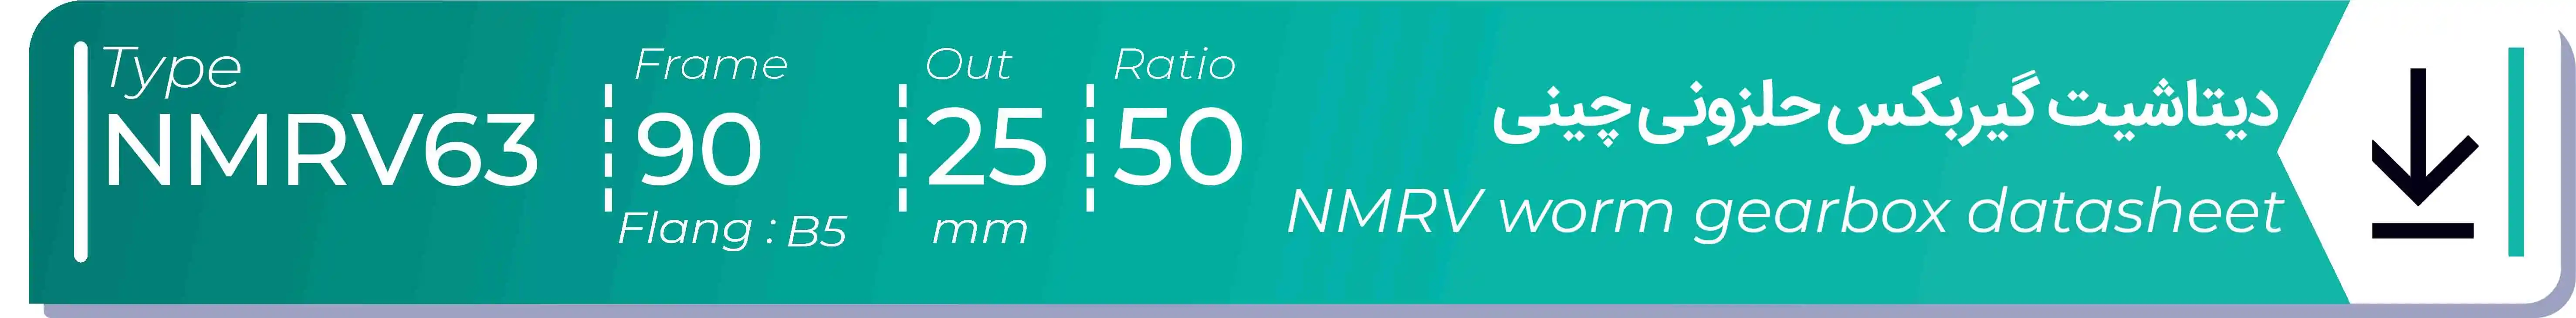  دیتاشیت و مشخصات فنی گیربکس حلزونی چینی   NMRV63  -  با خروجی 25- میلی متر و نسبت50 و فریم 90